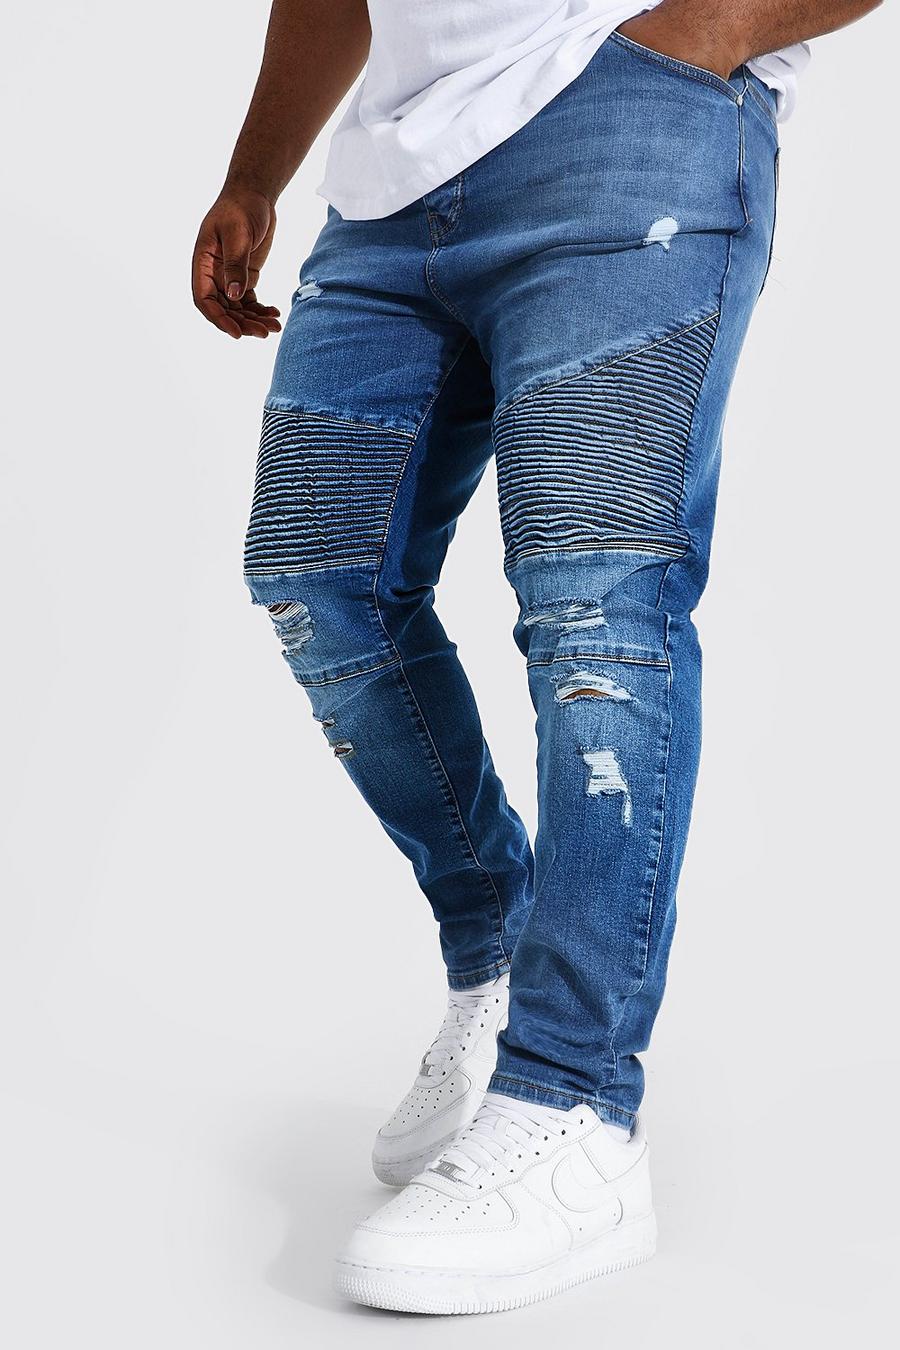 כחול ביניים ג'ינס סופר סקיני אופנוענים עם קרעים בברך, מידות גדולות image number 1